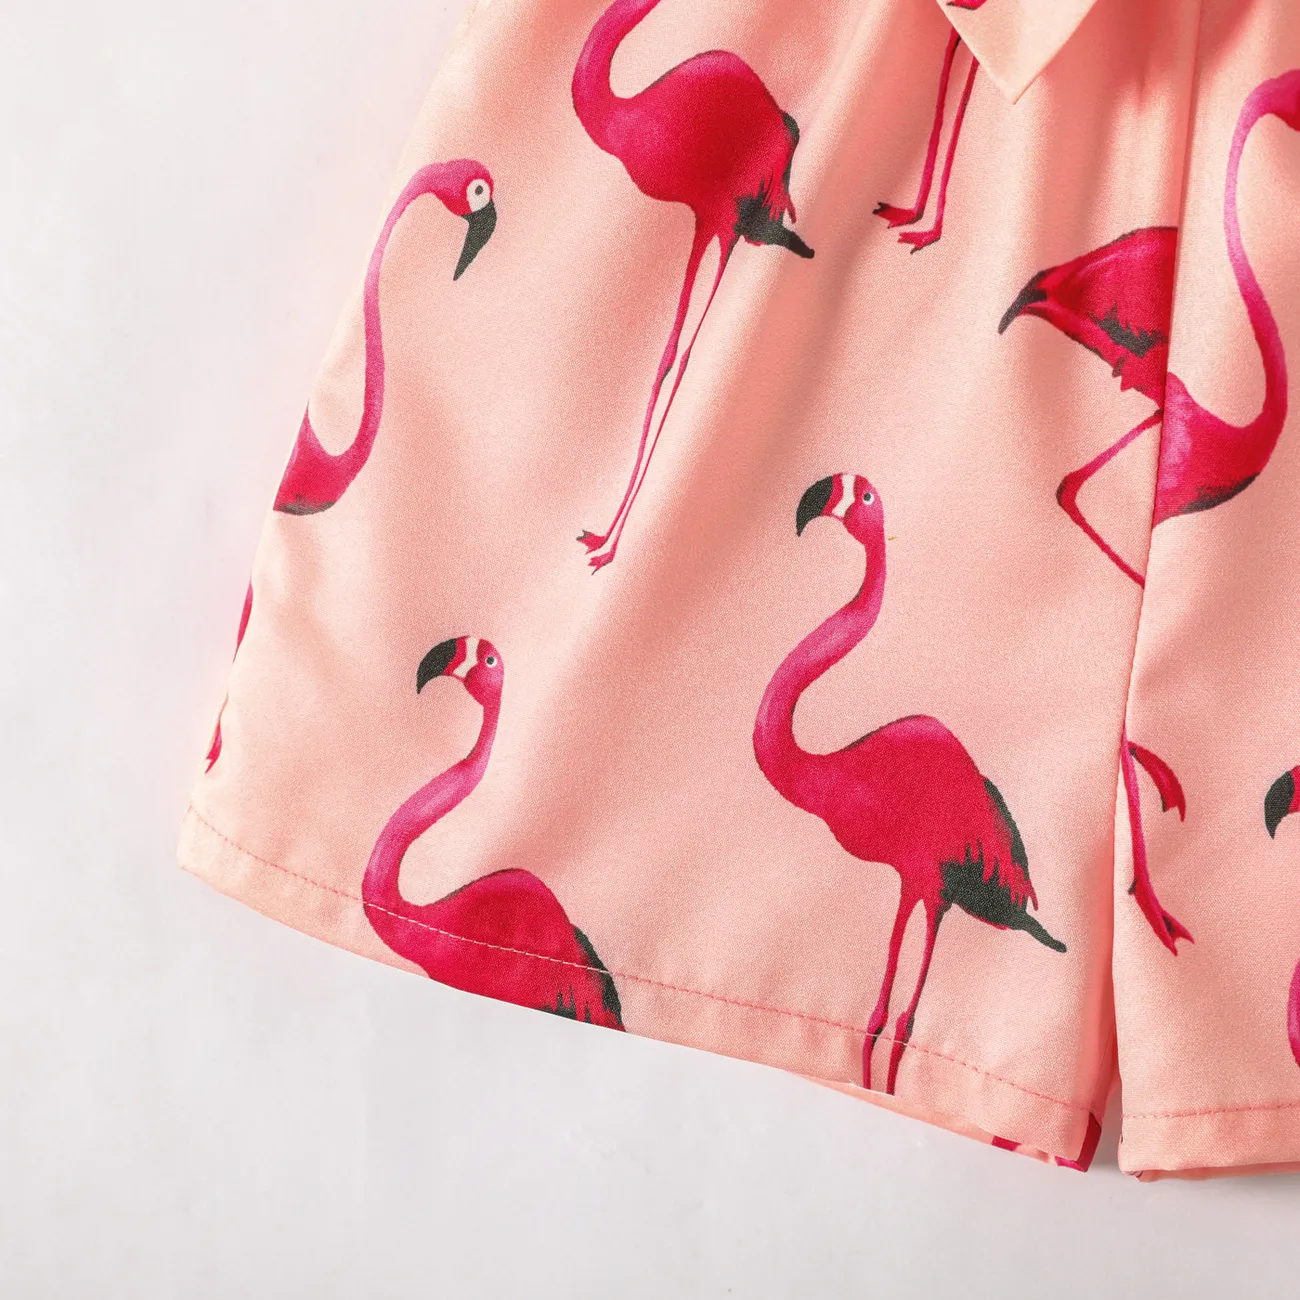 Toddler Girl Flamingo Print Button Design Belted Cami Romper Jumpsuit Shorts Pink big image 1